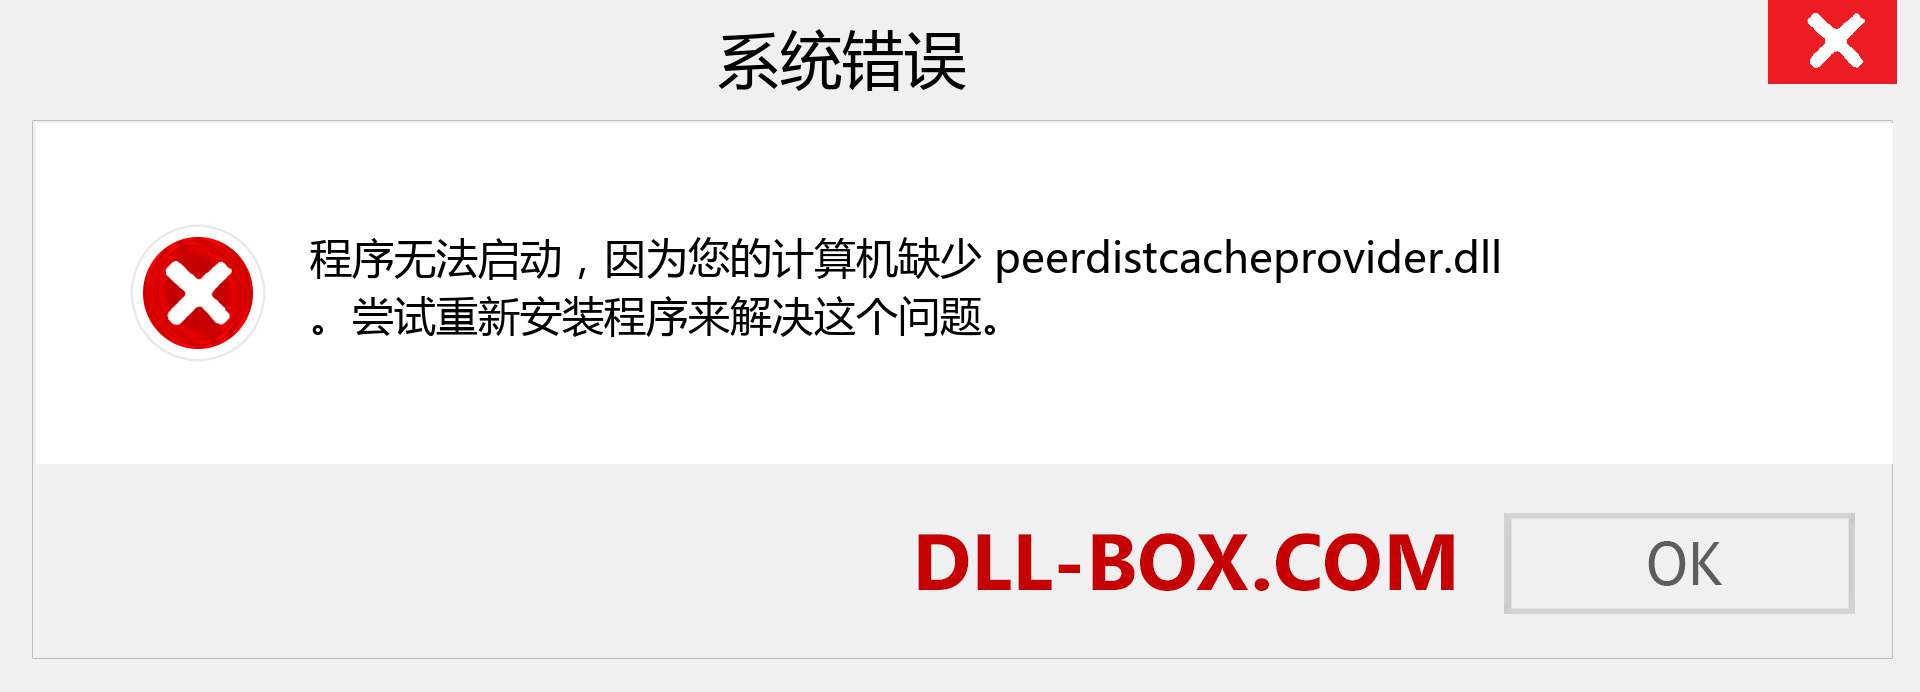 peerdistcacheprovider.dll 文件丢失？。 适用于 Windows 7、8、10 的下载 - 修复 Windows、照片、图像上的 peerdistcacheprovider dll 丢失错误